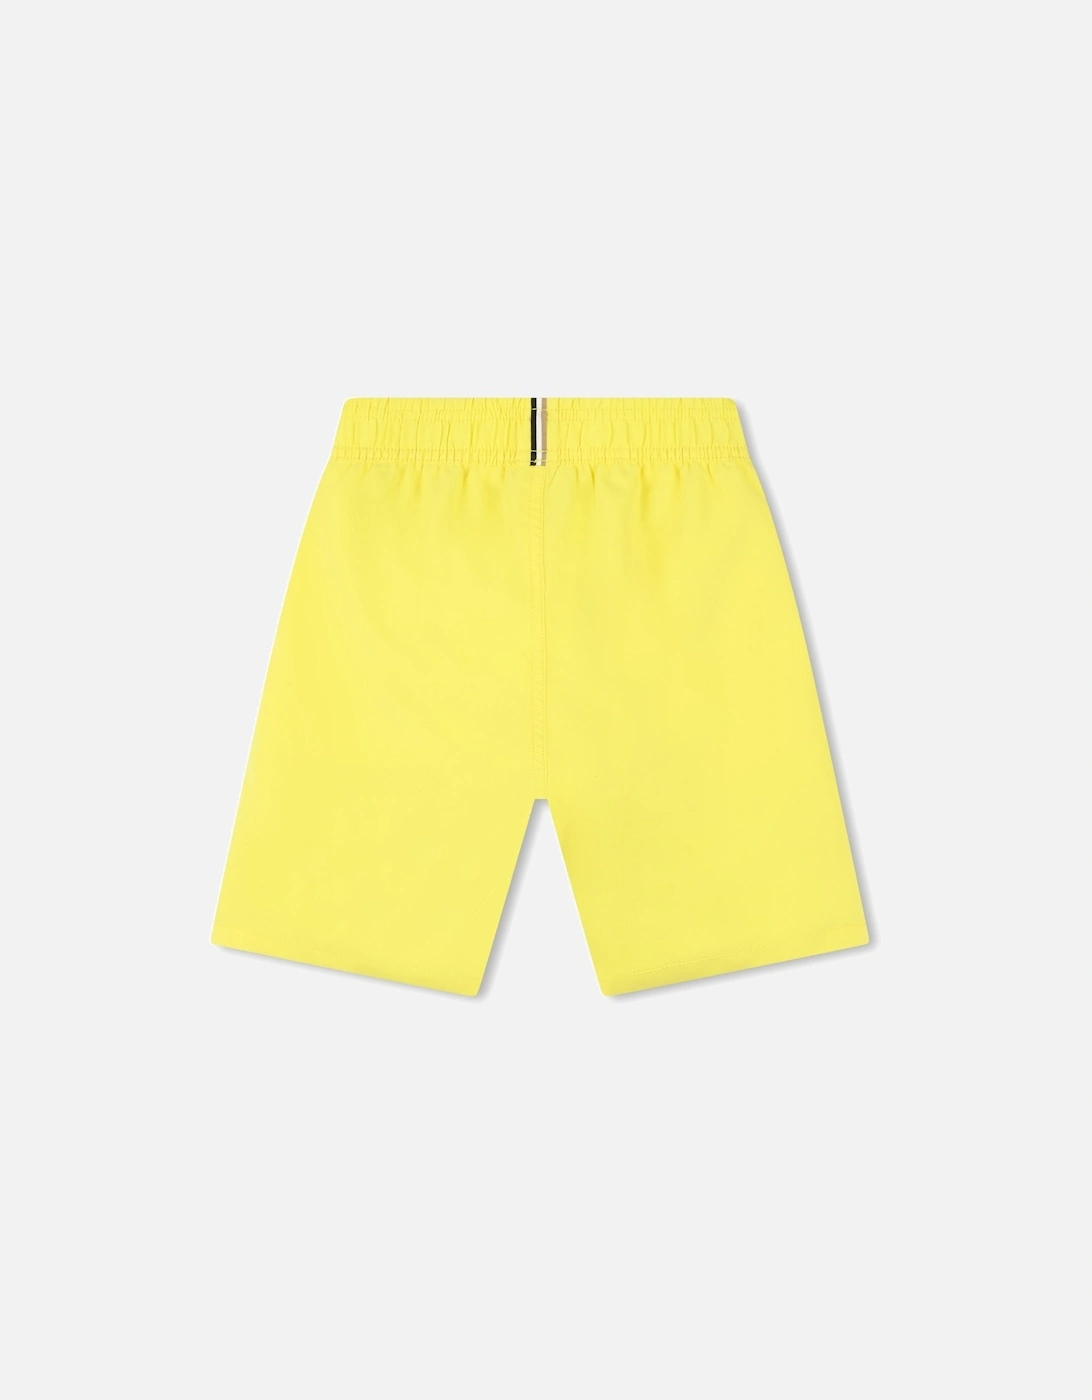 Juniors Swimming Shorts (Yellow)